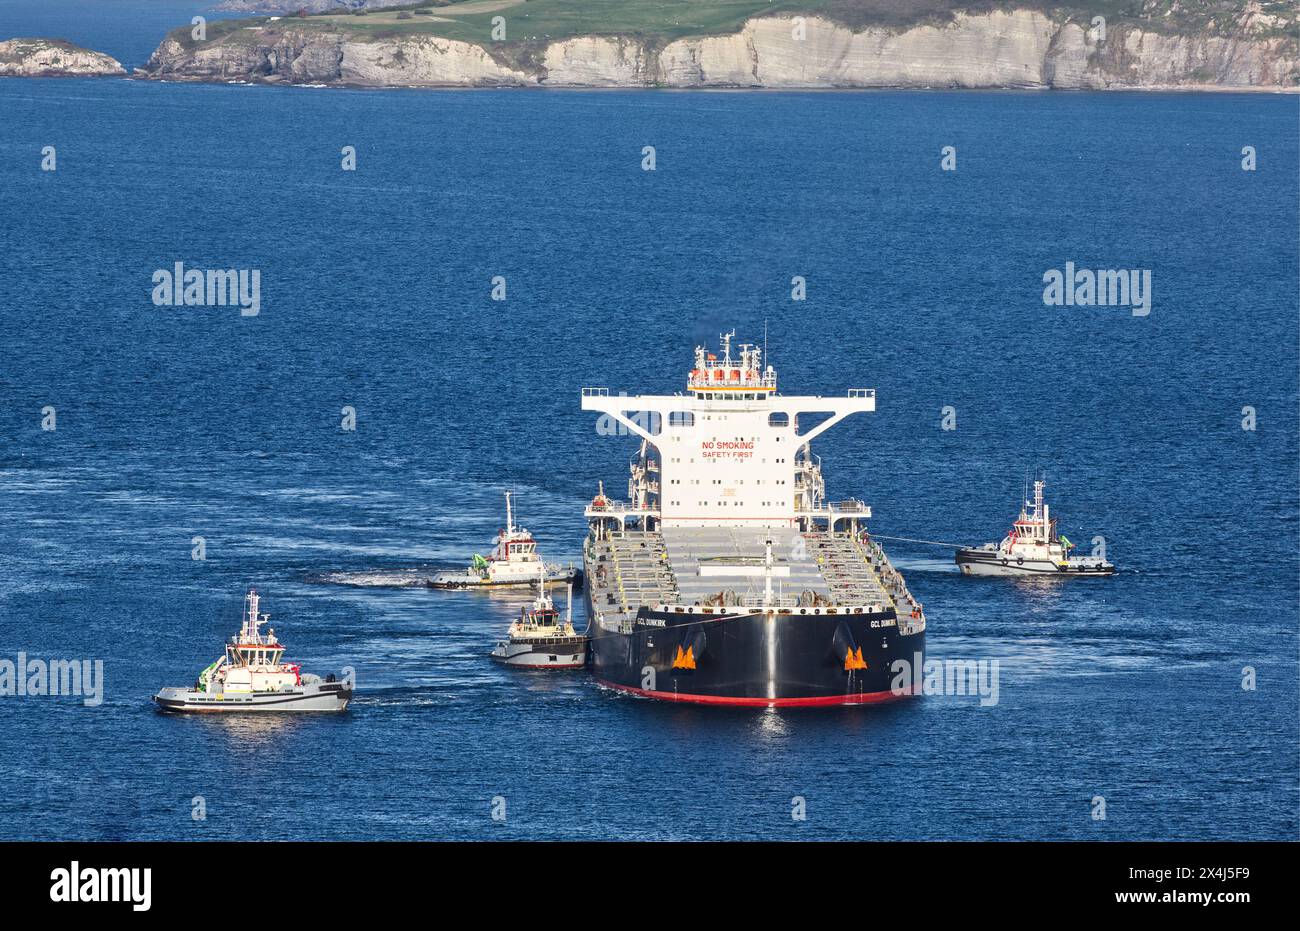 Schiff, GCL Dunkirk, Feststoff-Massengutfrachter, Andockmanöver am Dock von Ingeniero León. Puerto del Musel, Gijón, Asturien, Spanien Stockfoto